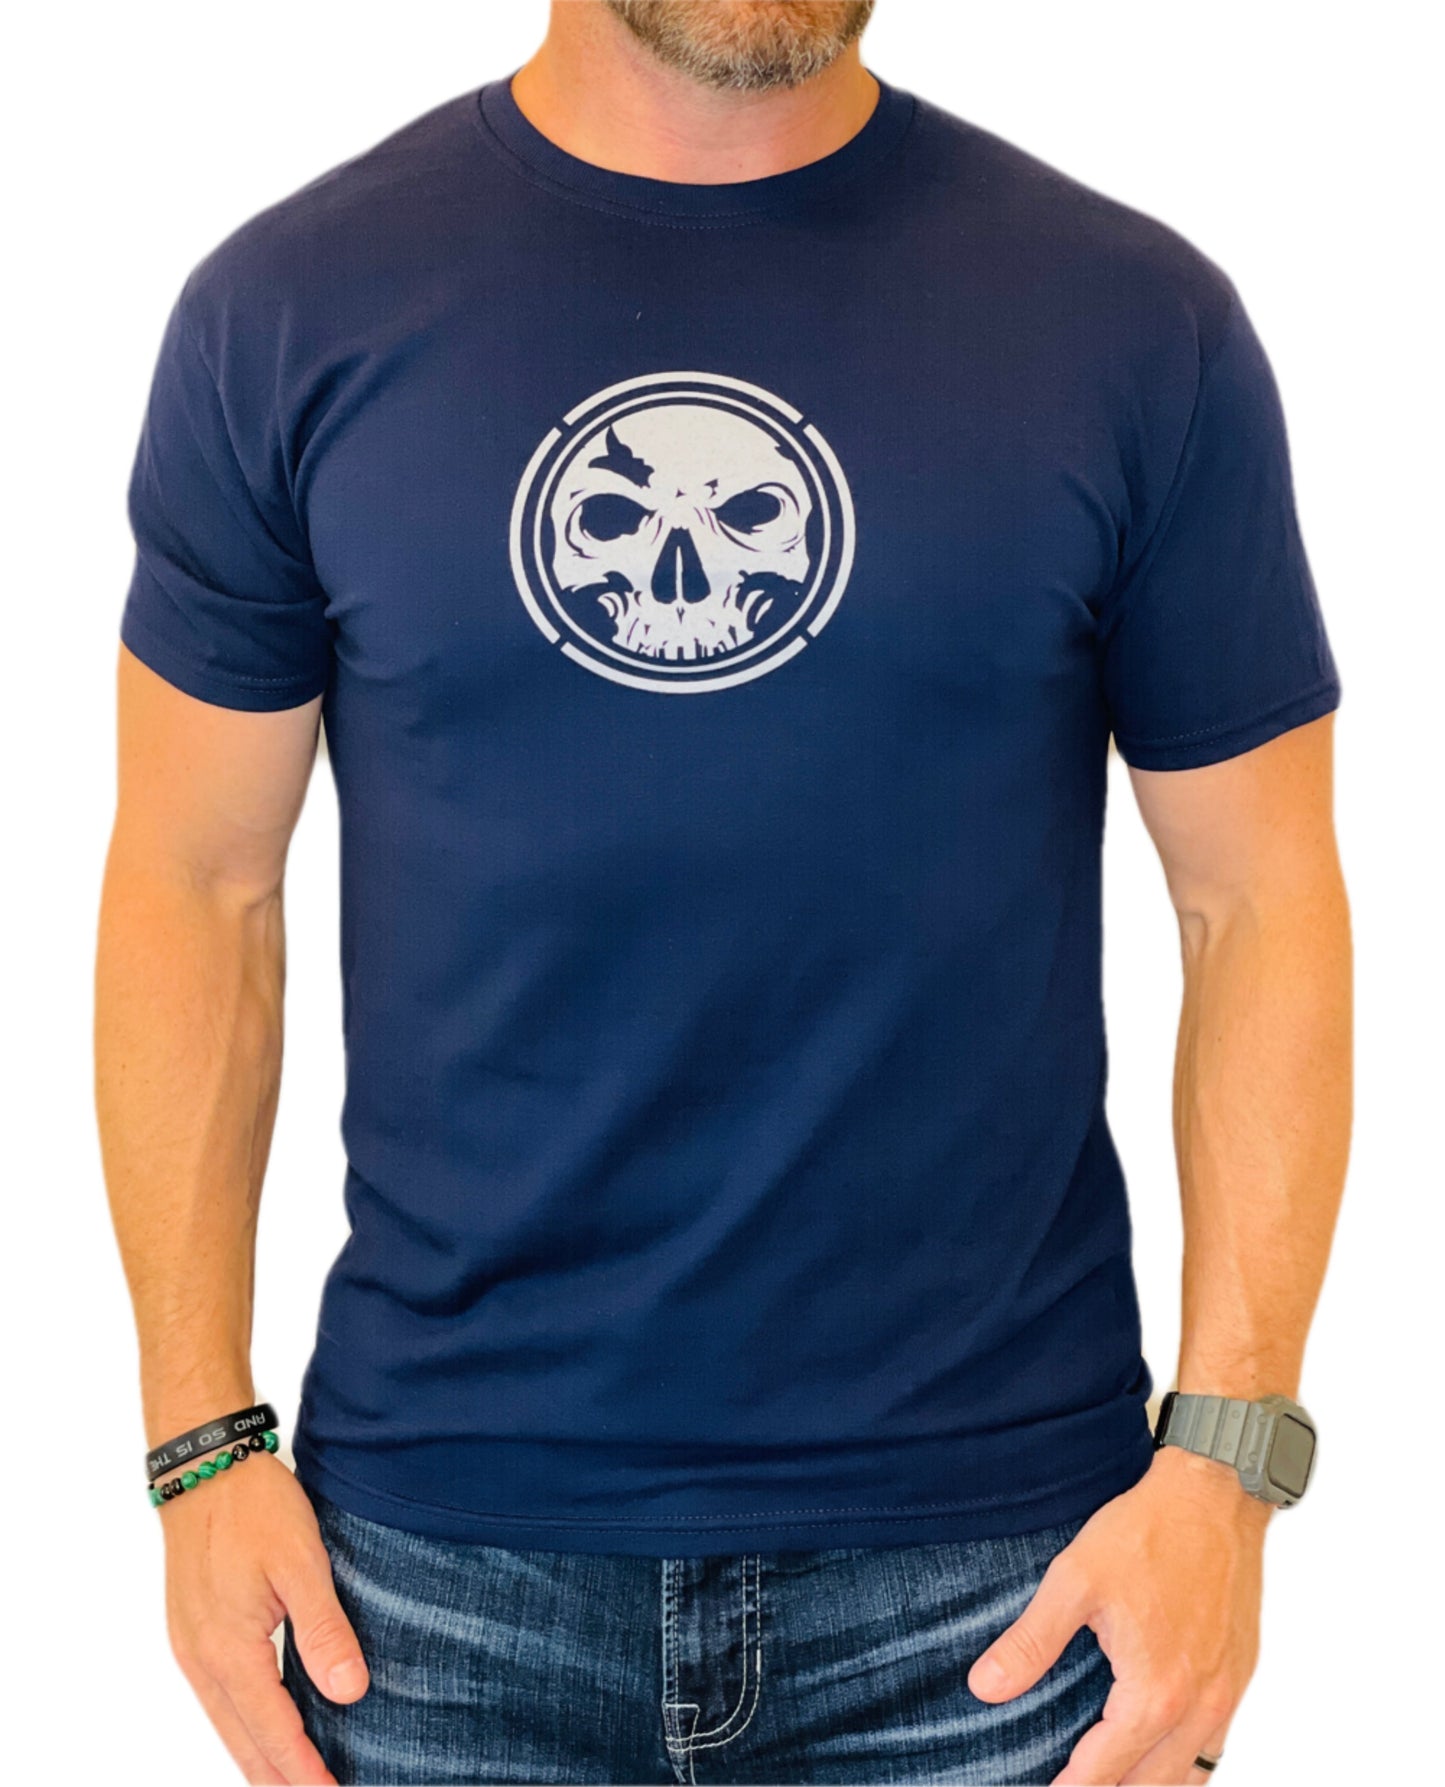 Men's Navy Moisture Management T-Shirt 2.0